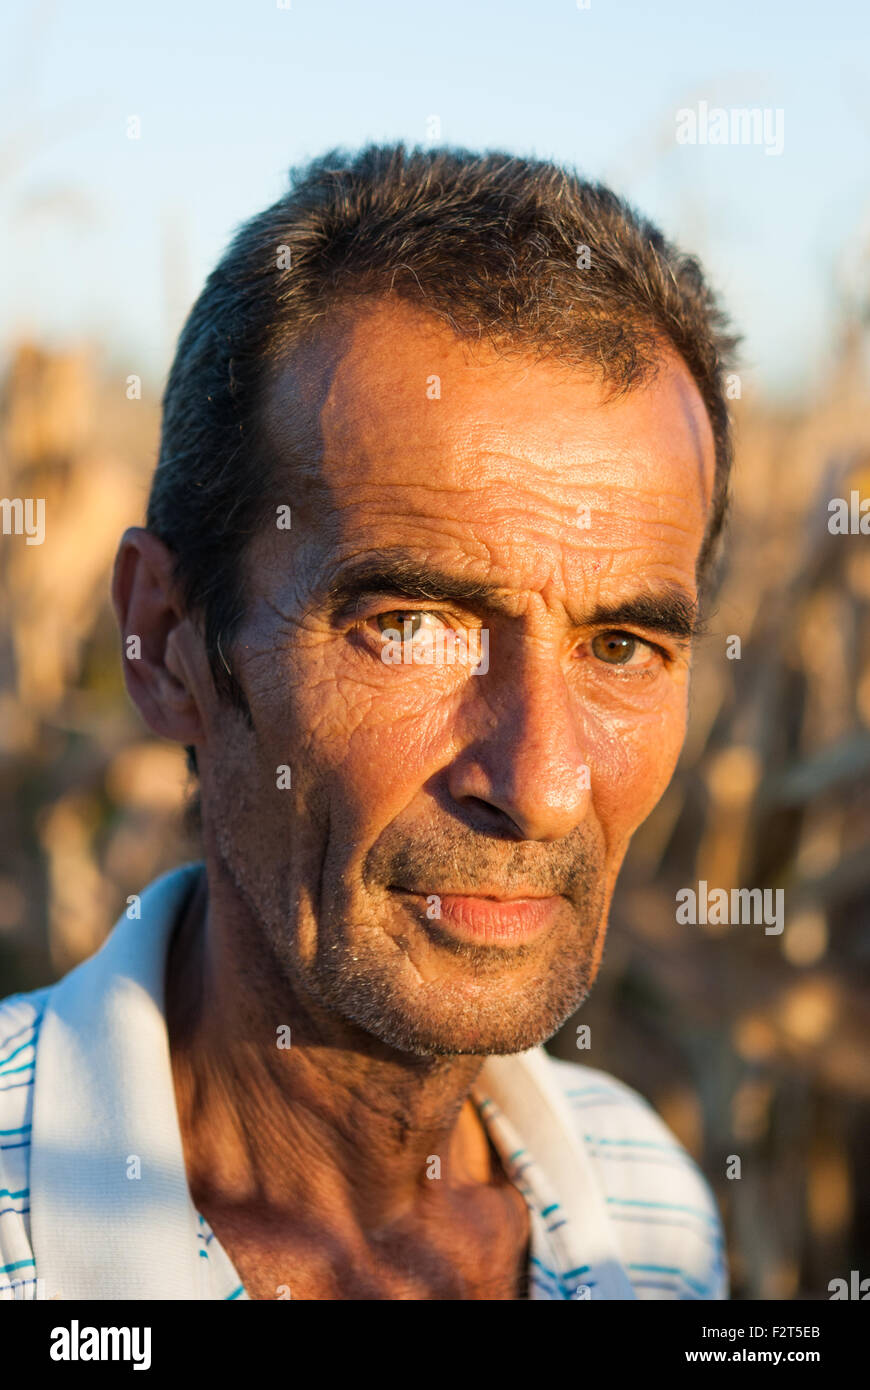 Portrait de l'agriculteur roumain en plein air dans le champ libre au coucher du soleil. Roumanie Banque D'Images